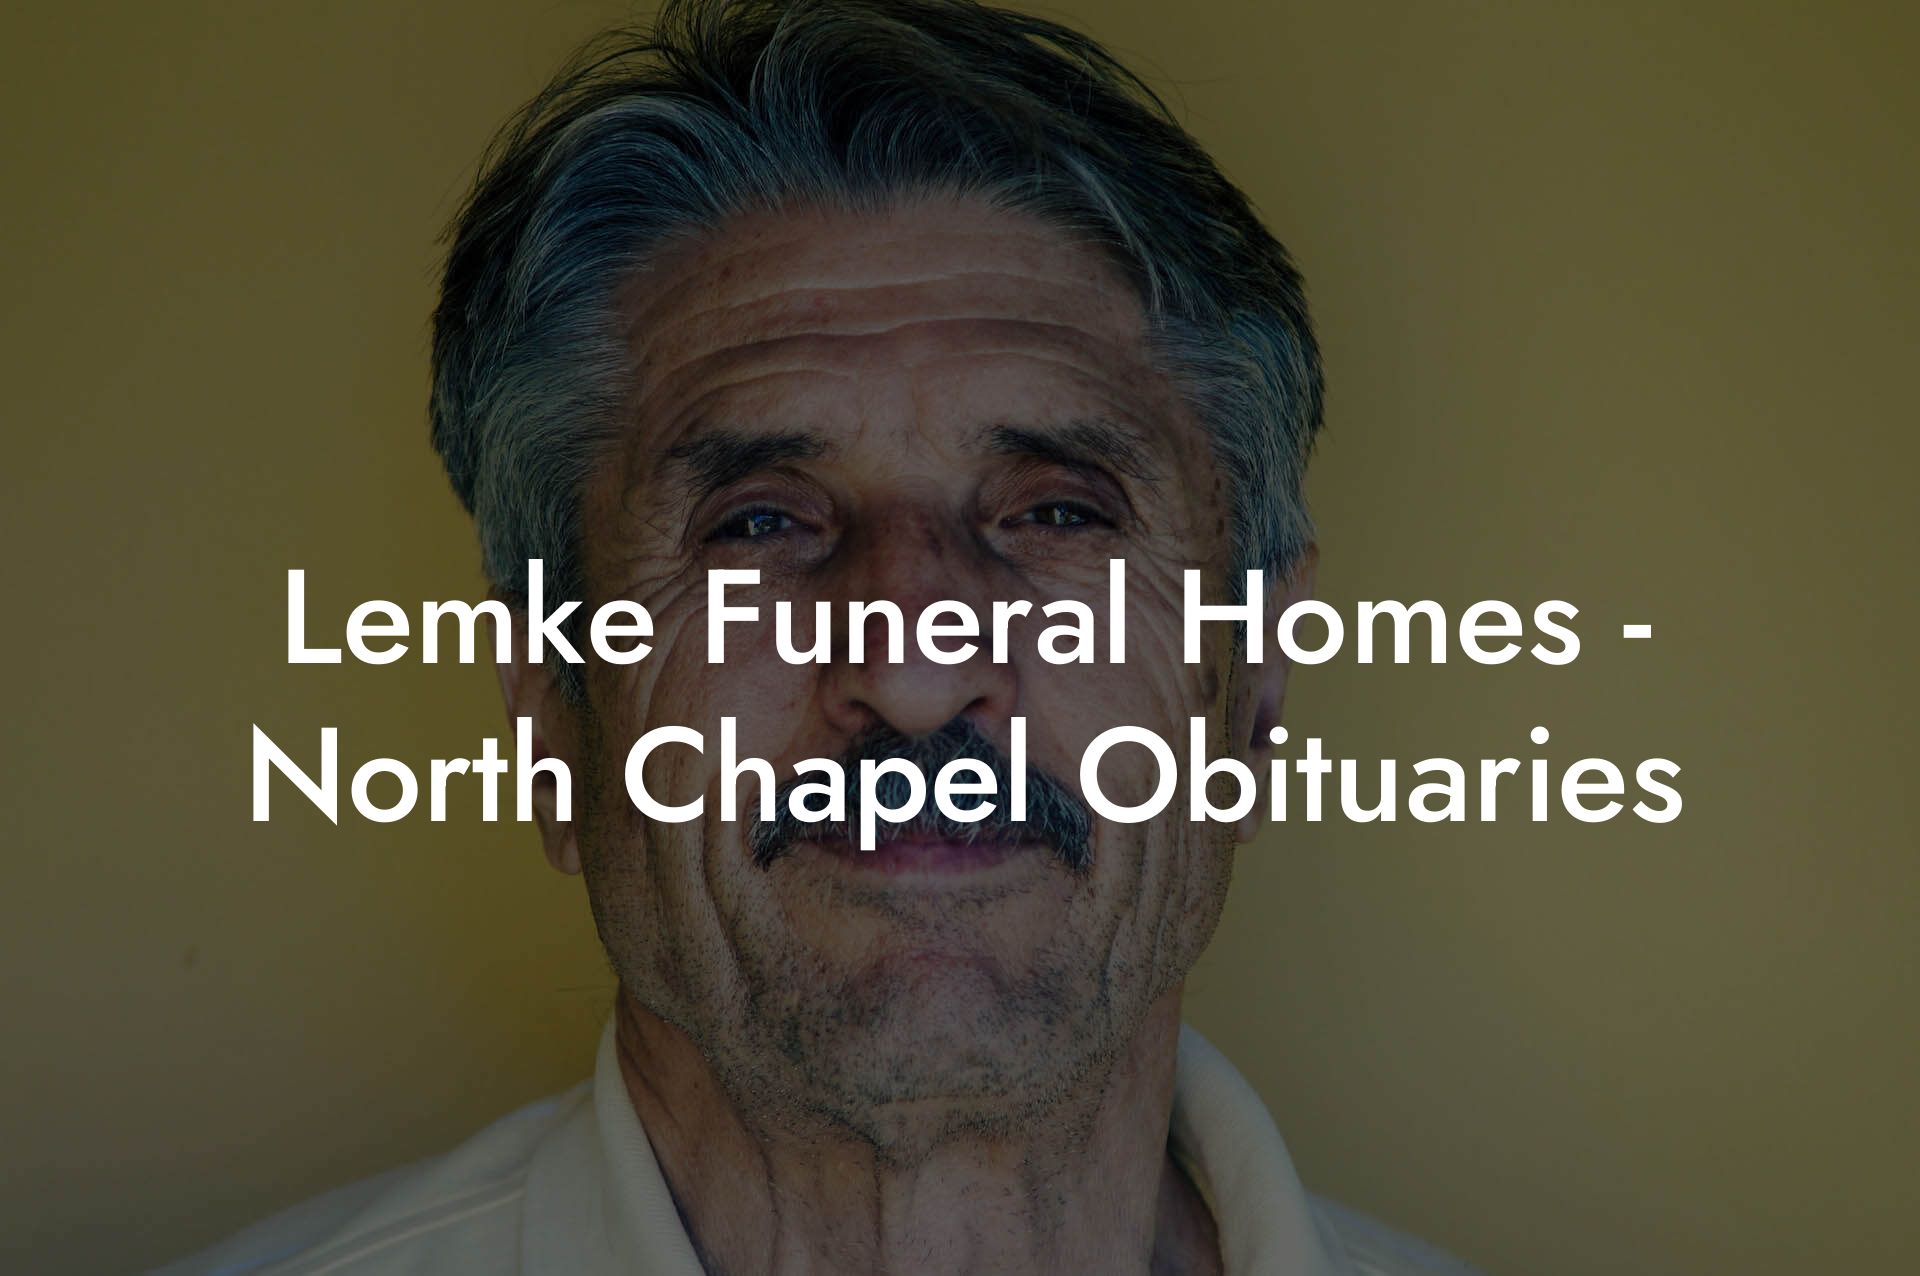 Lemke Funeral Homes - North Chapel Obituaries